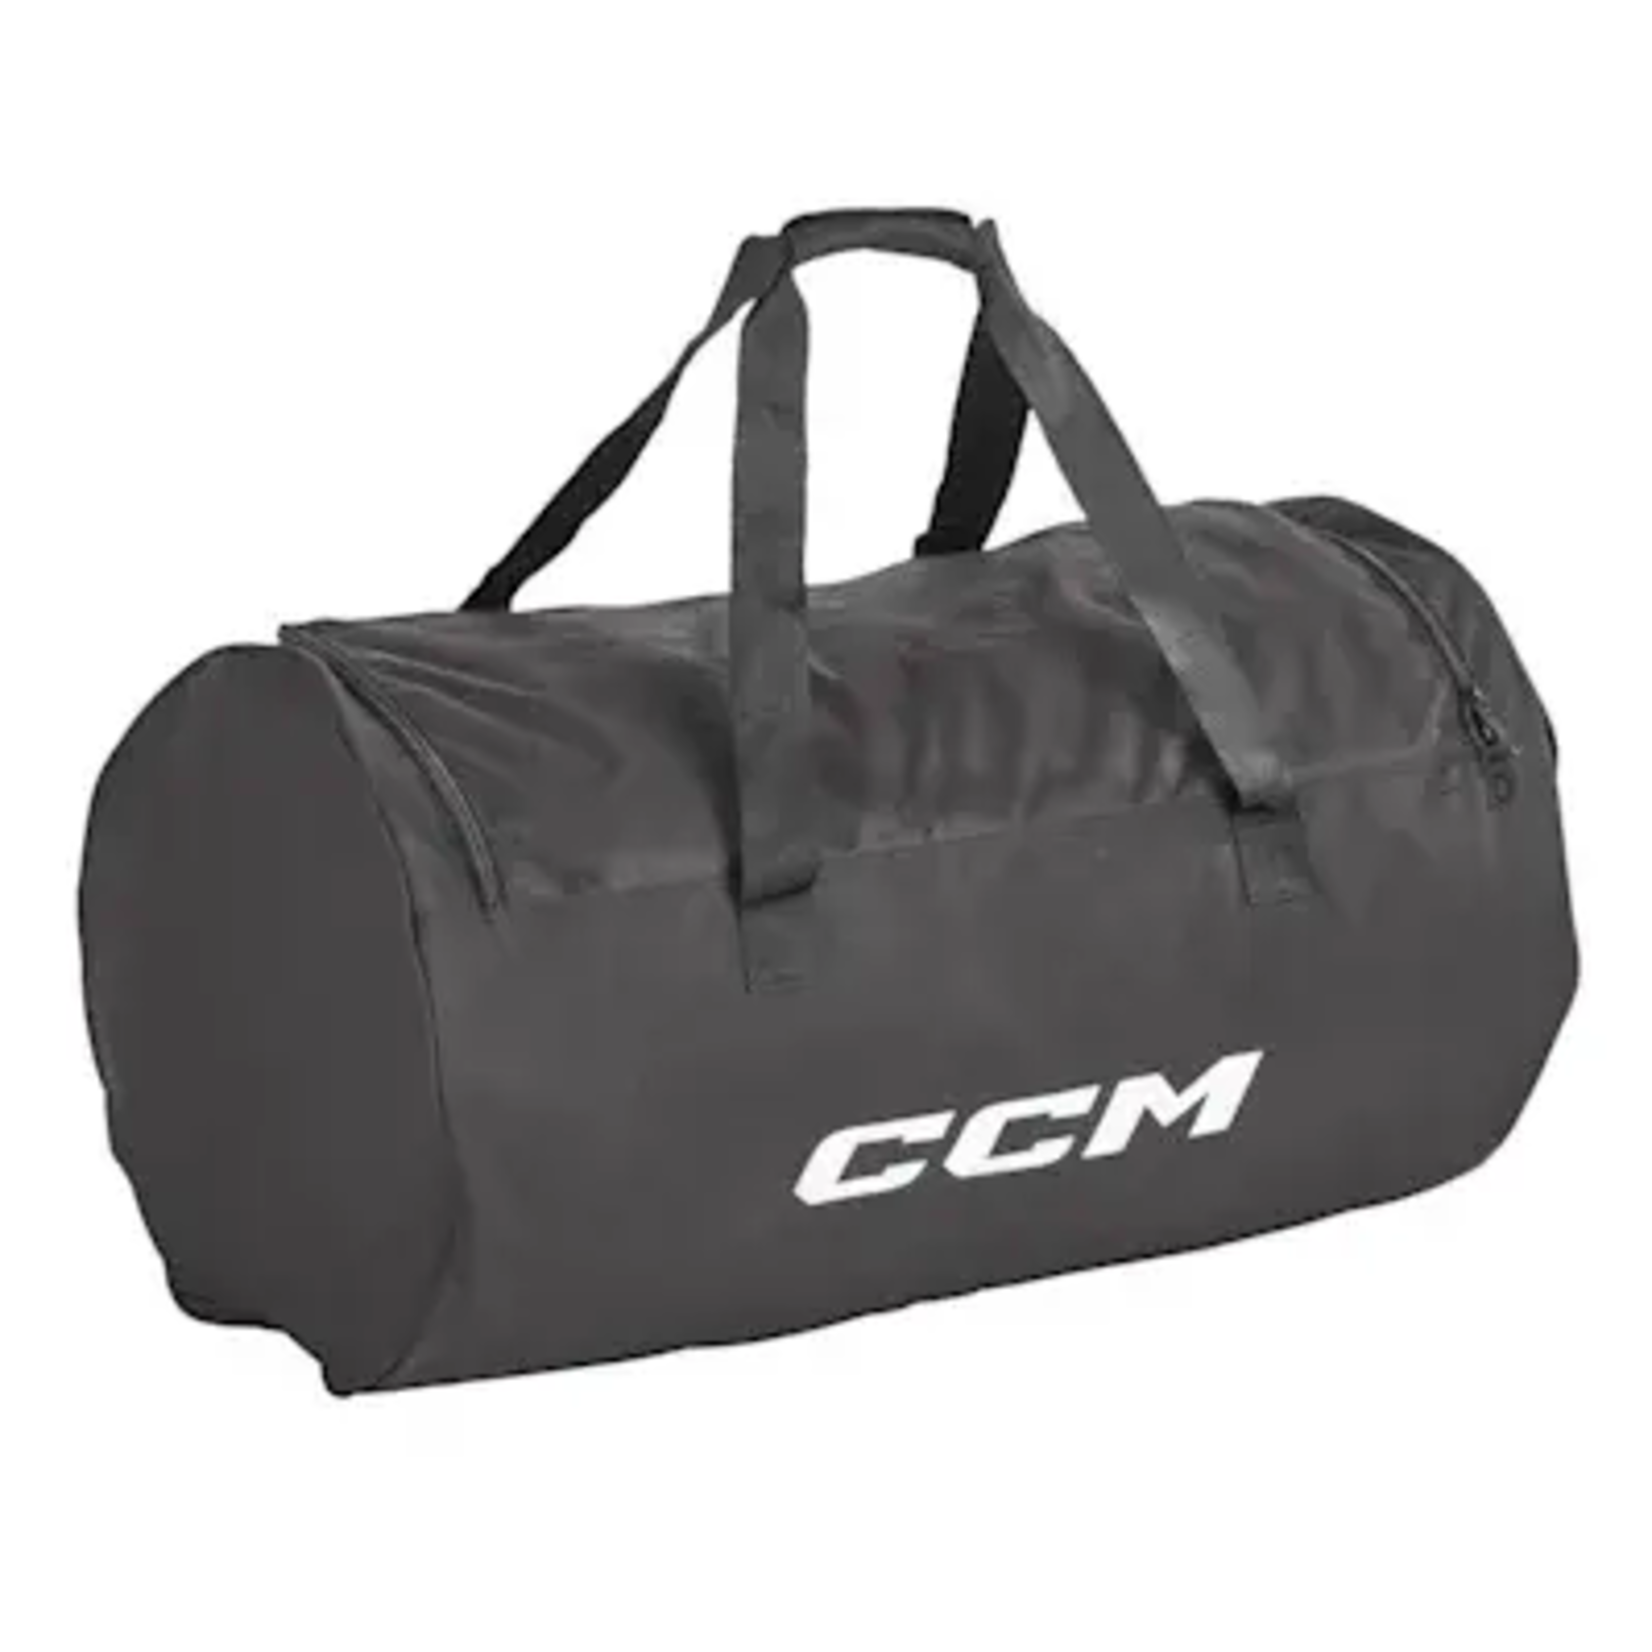 CCM CCM Hockey Bag, 410 Player Basic Carry, Junior, 24", Blk